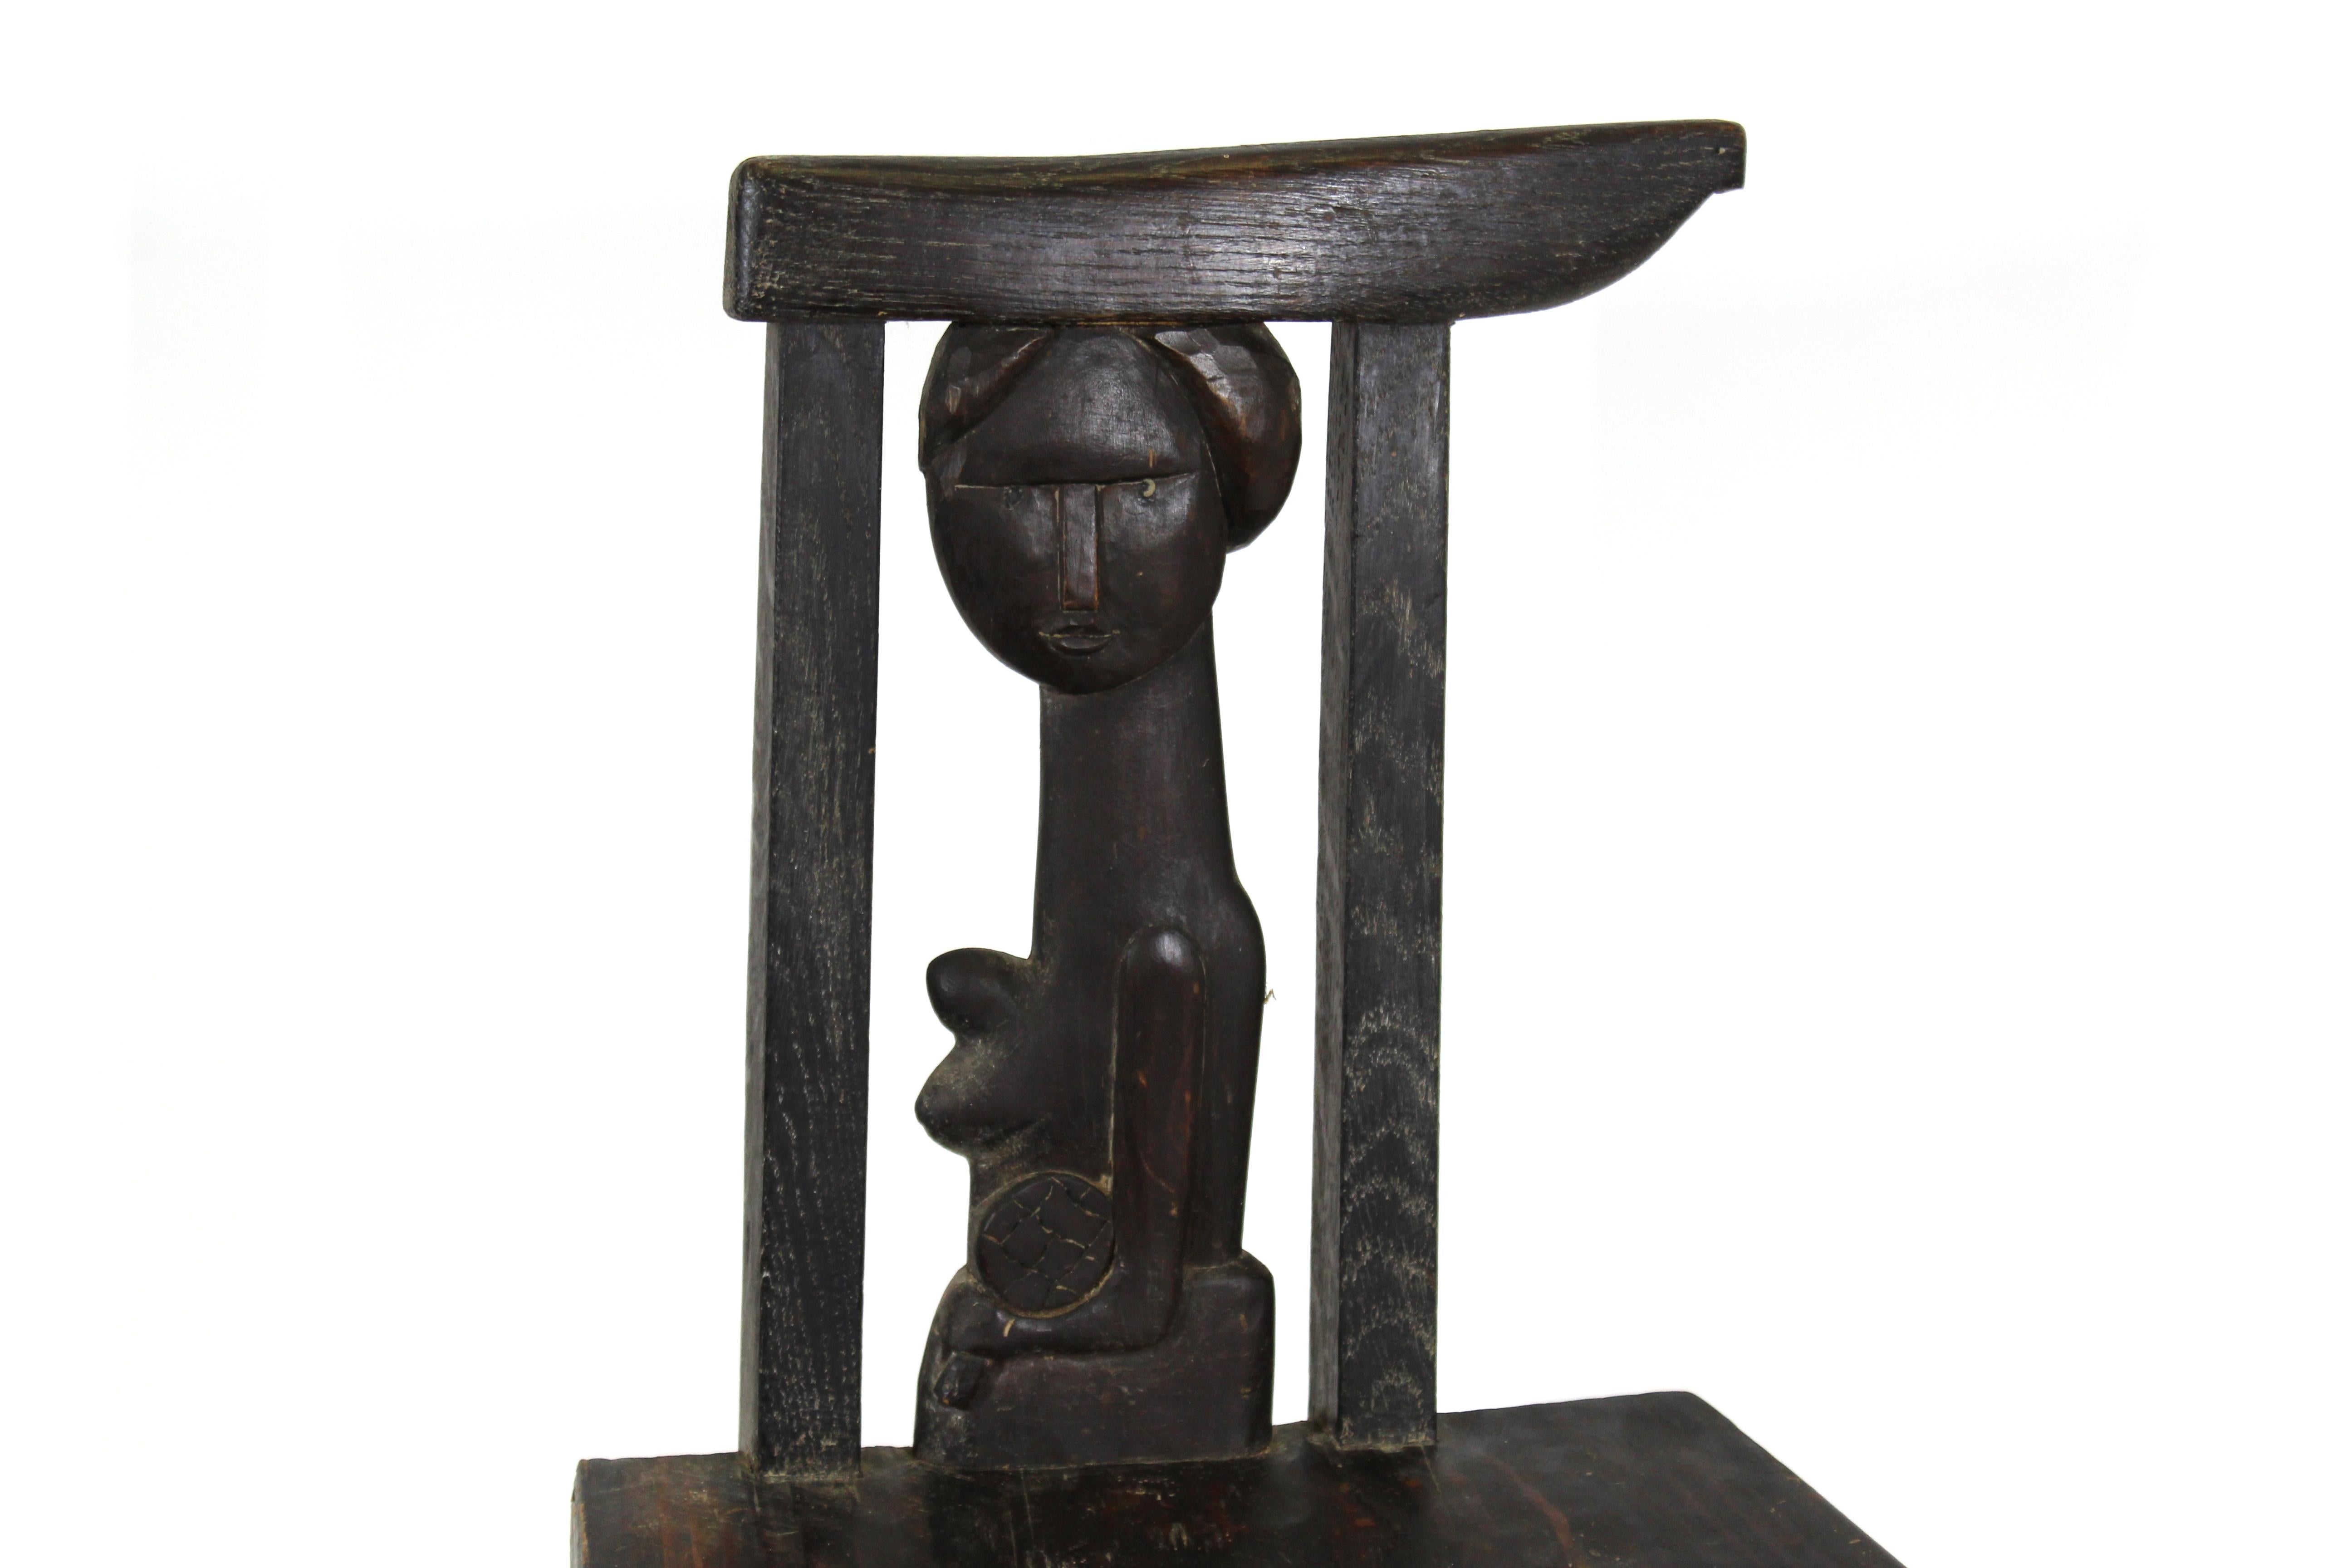 Polnischer Volkskunst-Stuhl aus geschnitztem und gemeißeltem Holz, geschaffen von dem bekannten polnischen Künstler und Bildhauer Antoni Rzasa (1919-1980). Der Stuhl hat eine geschnitzte Rückenlehne mit einer nackten Frau als Skulptur. Die